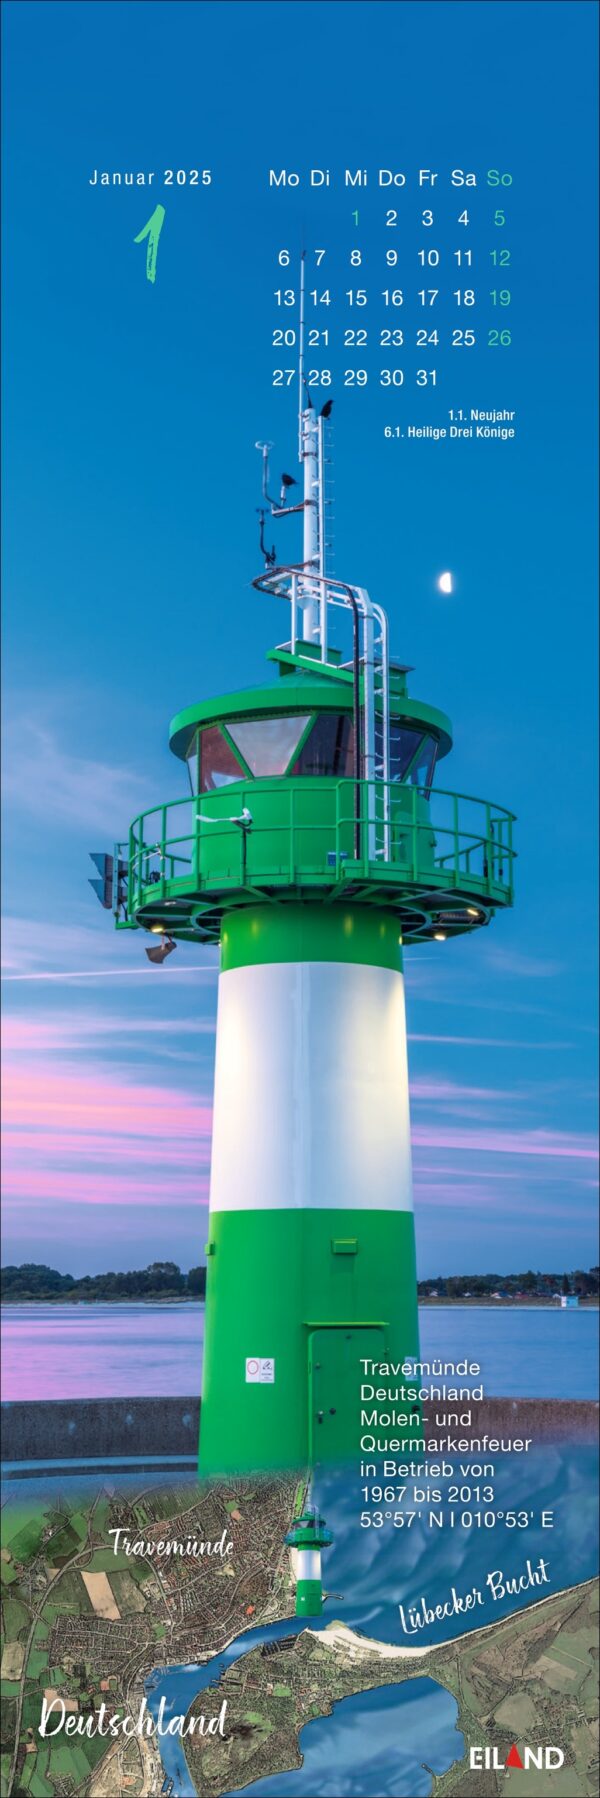 Ein LilleEiland - Kalender 2025 für Januar mit einem großen grün-weißen Leuchtturm in der Abenddämmerung, mit einem Vollmond in einem klaren blauen Himmel. Nachfolgend finden Sie Einzelheiten zum Standort des Leuchtturms in Travemünde.